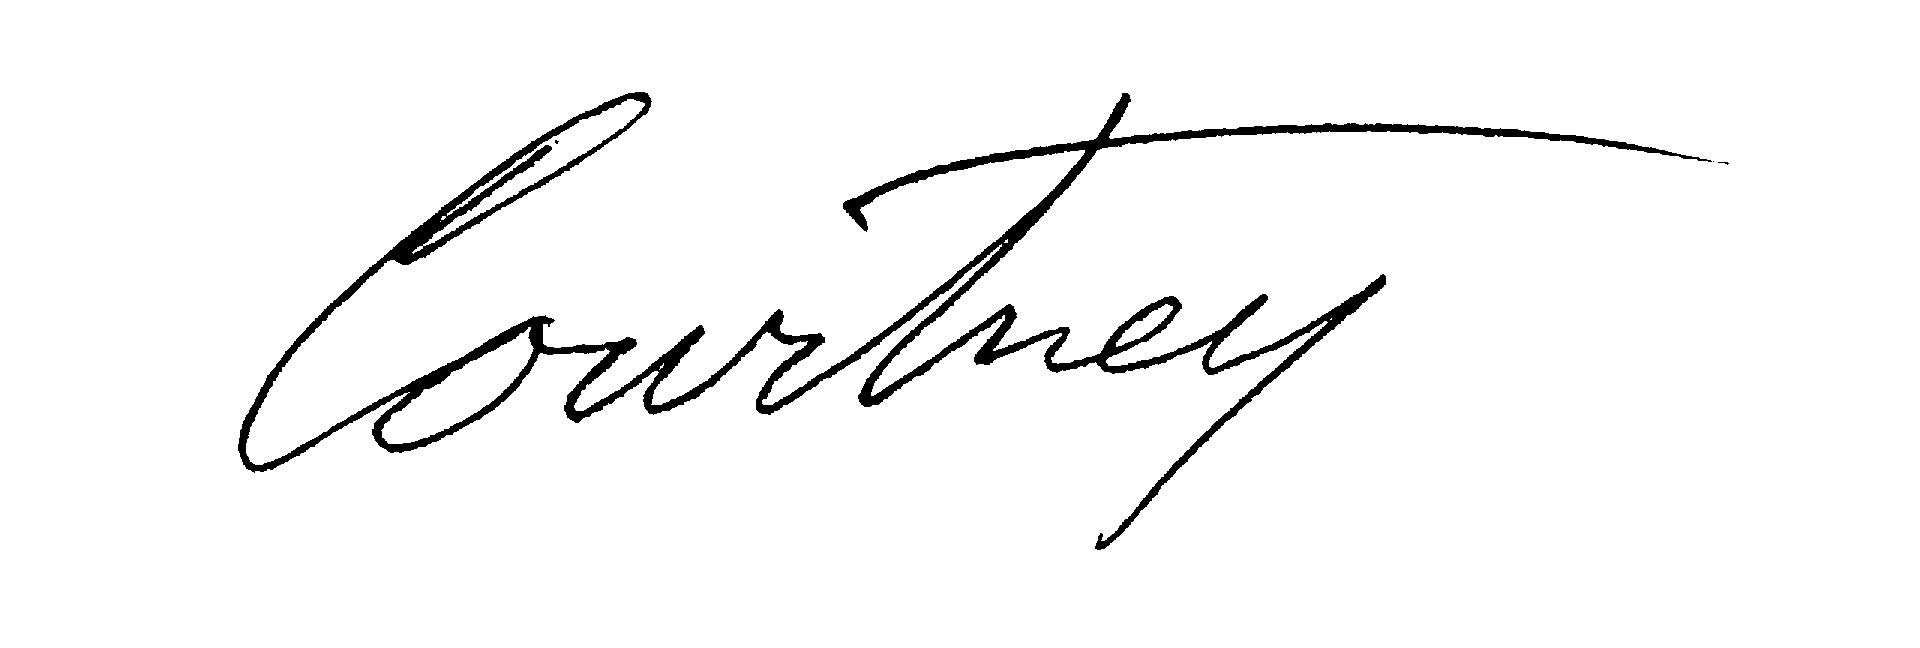 signature-are-na